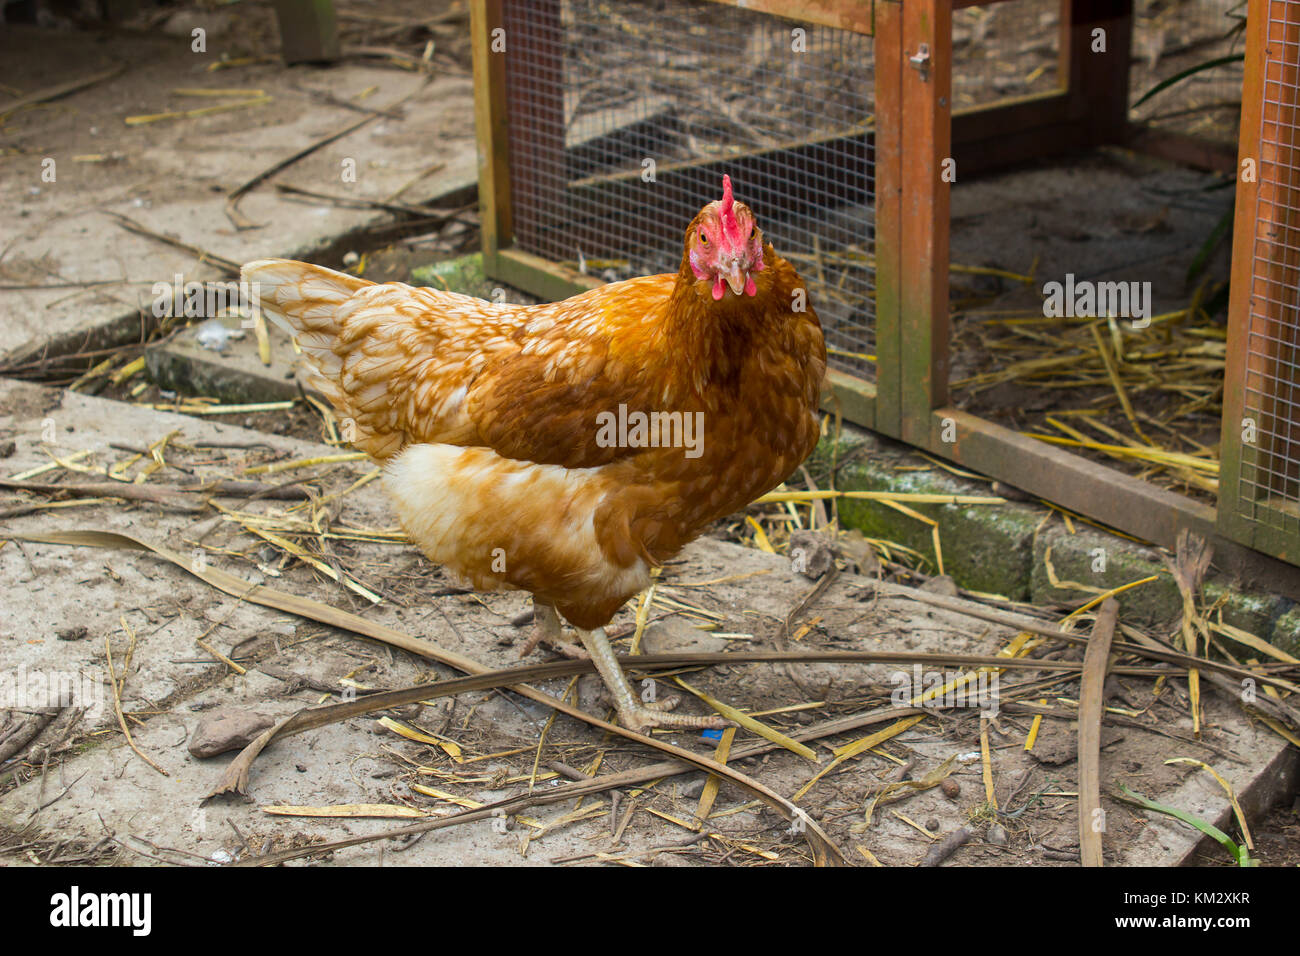 Una gallina rossa ibrida ovaiola in un cortile interno e giardino Foto Stock